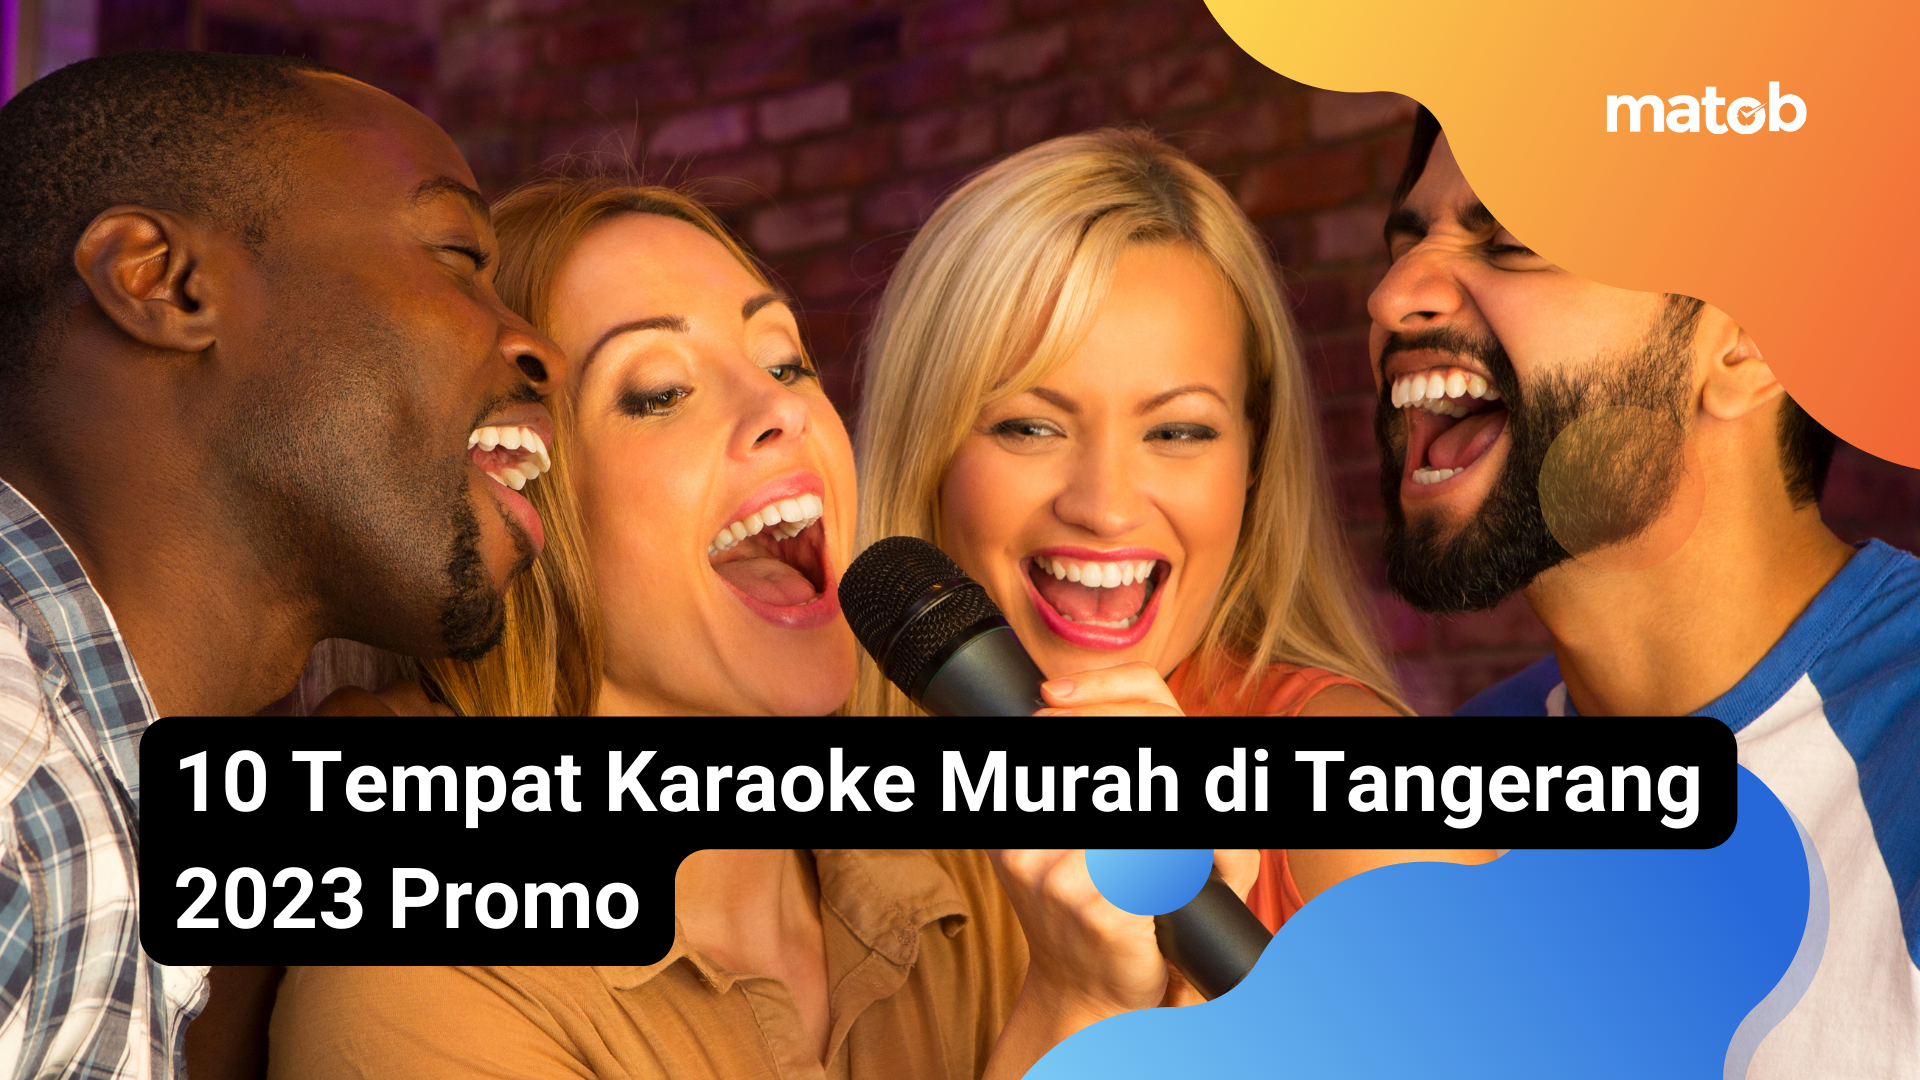 8 Matob Bisnis 10 Tempat Karaoke Murah di Tangerang 2023 Promo